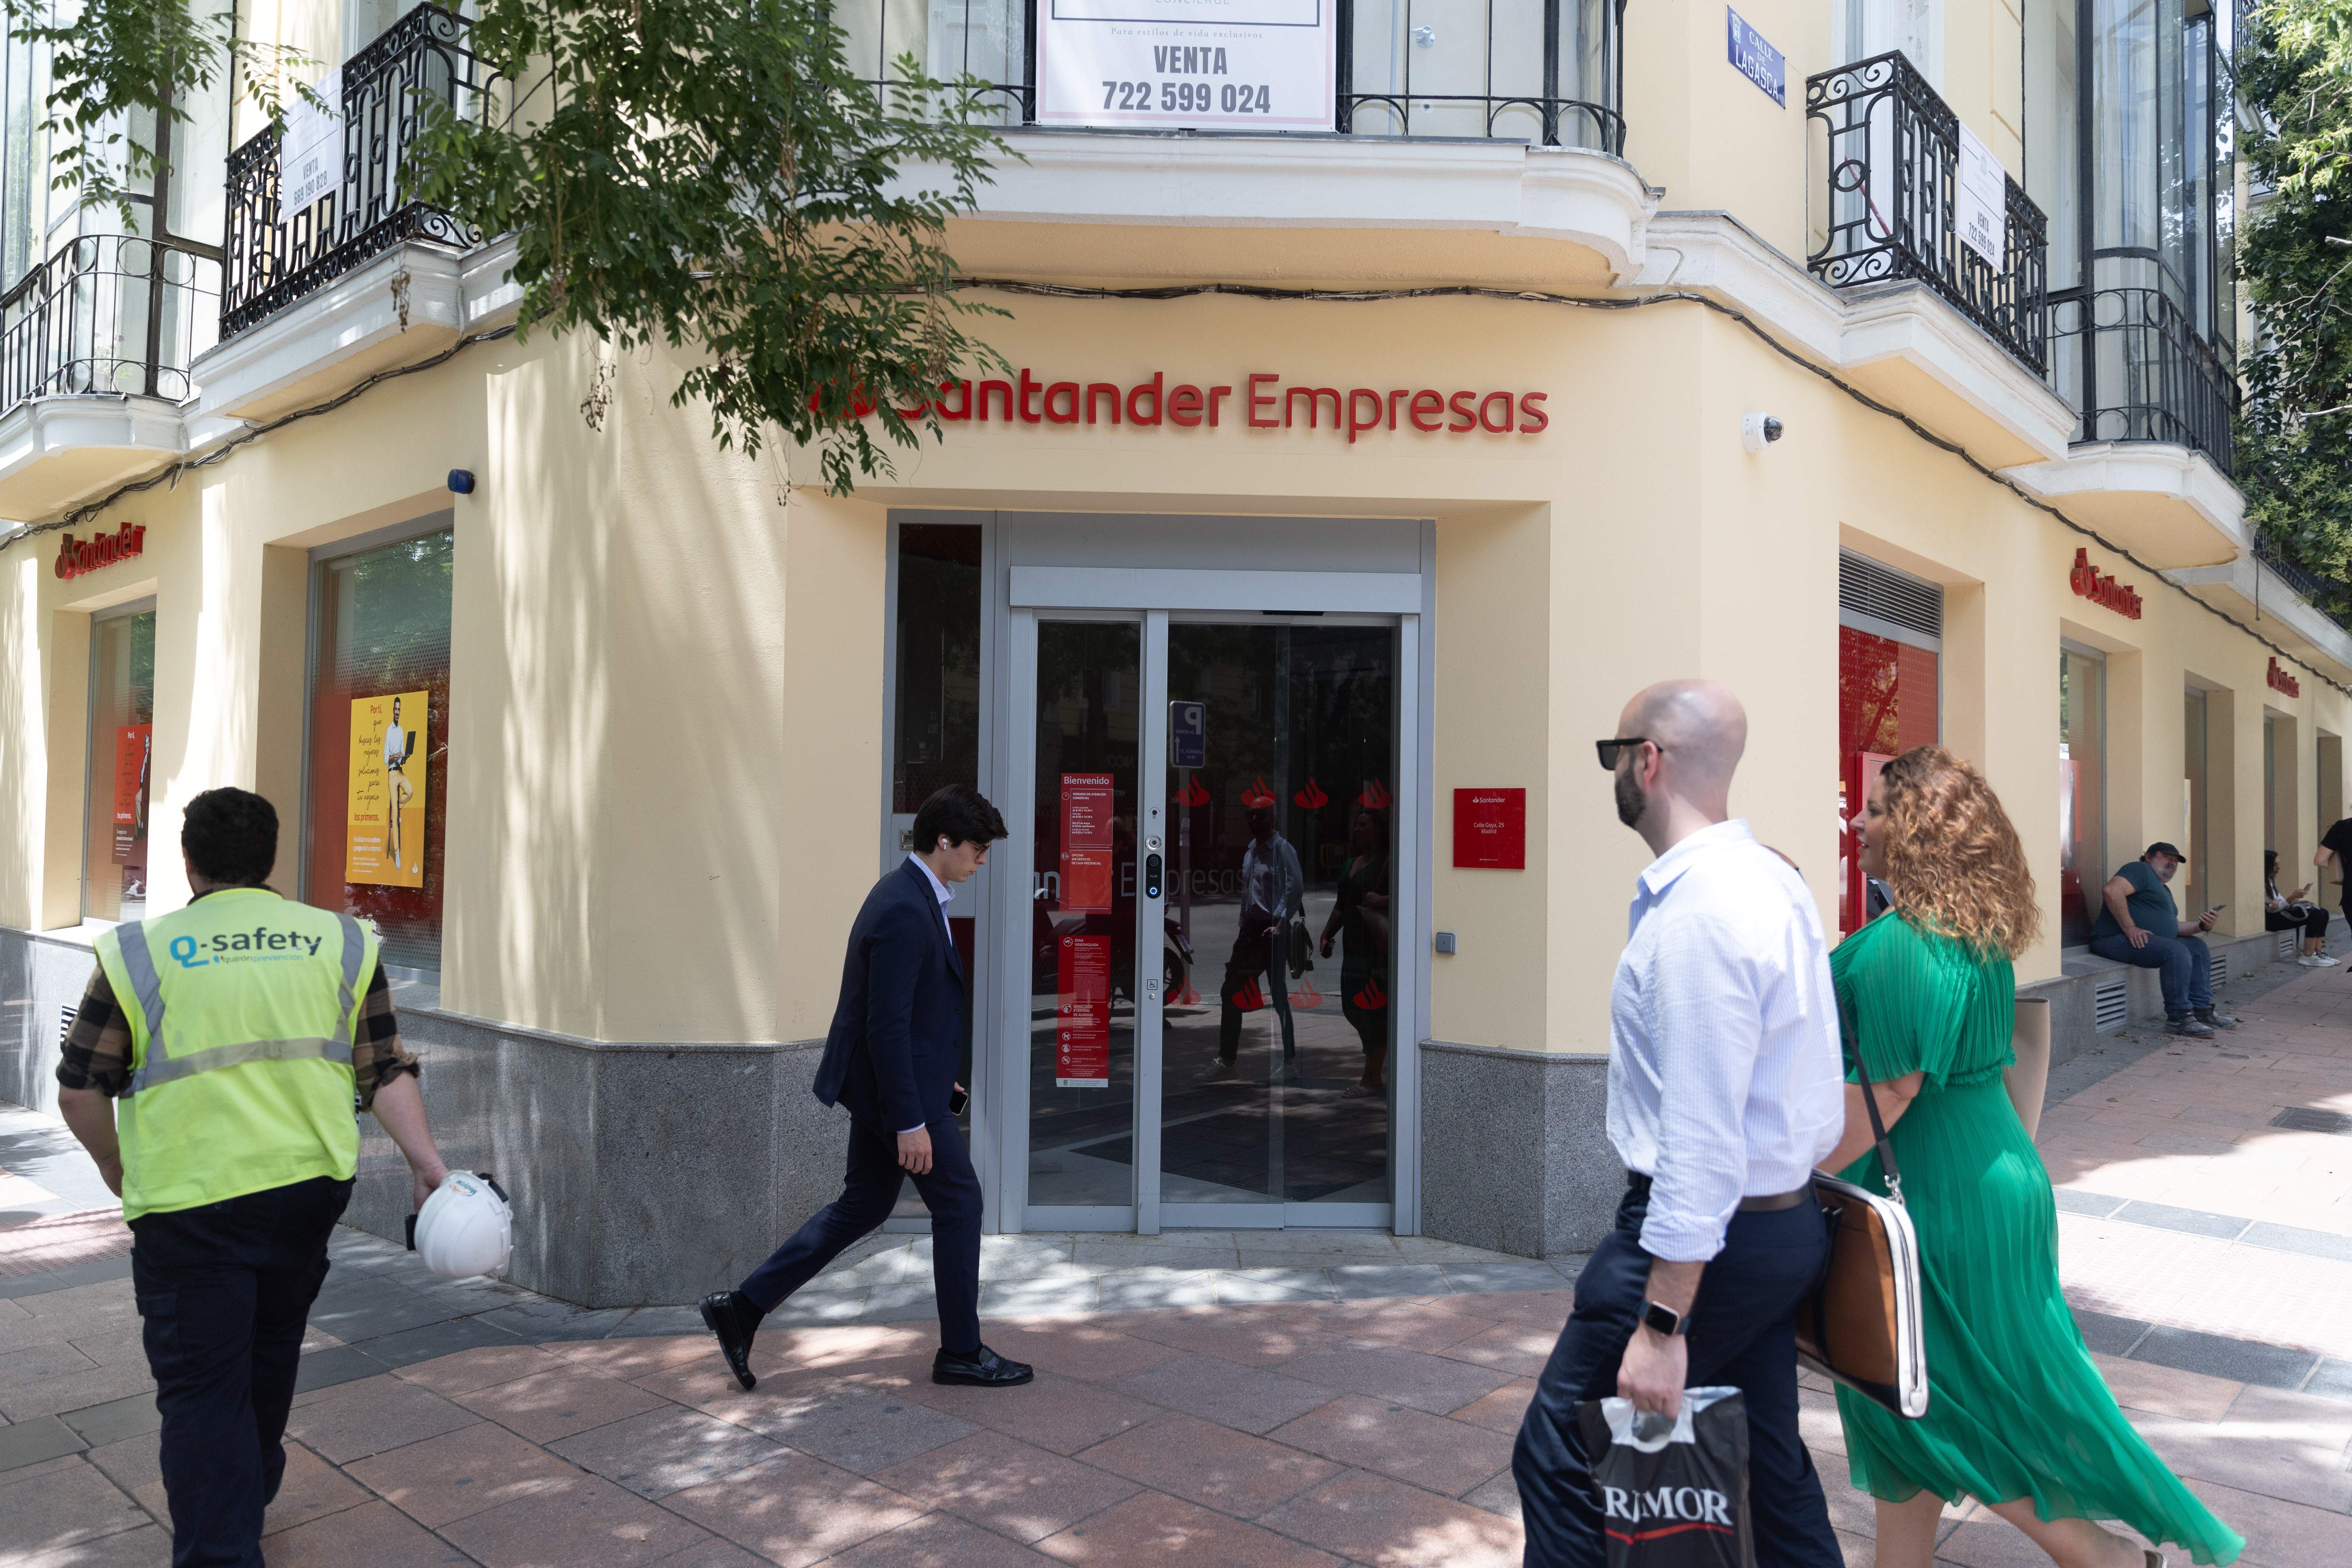 El Santander se lanza a por los autónomos y pymes: regala 500 euros con su nueva 'Cuenta Negocio'